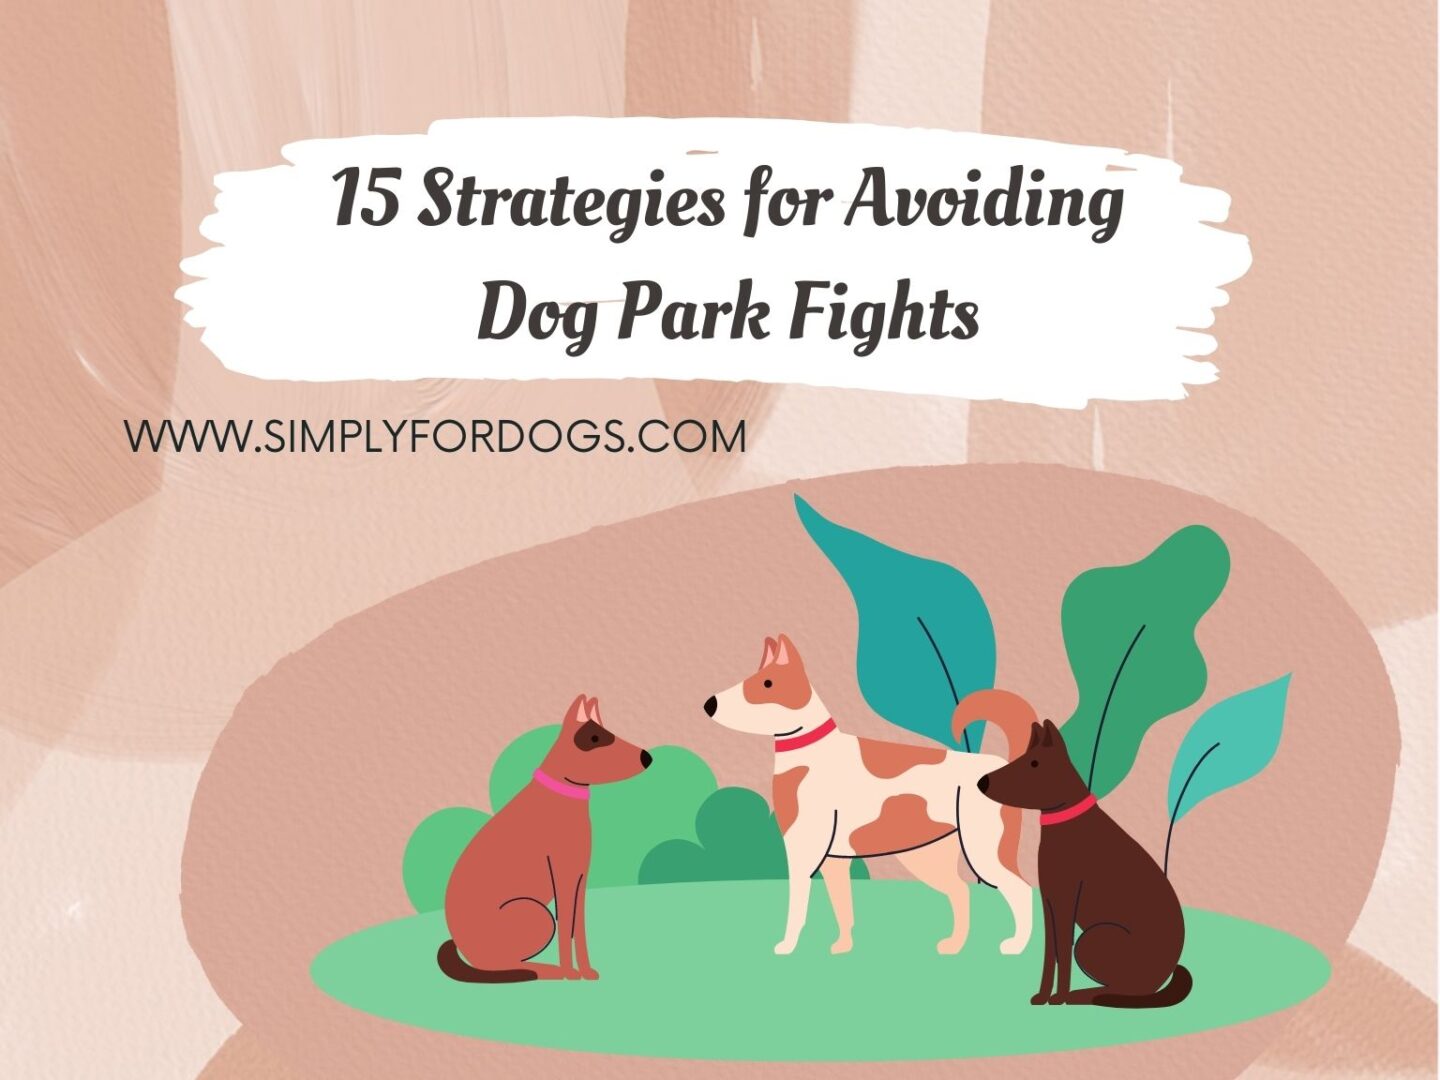 15 Strategies for Avoiding Dog Park Fights